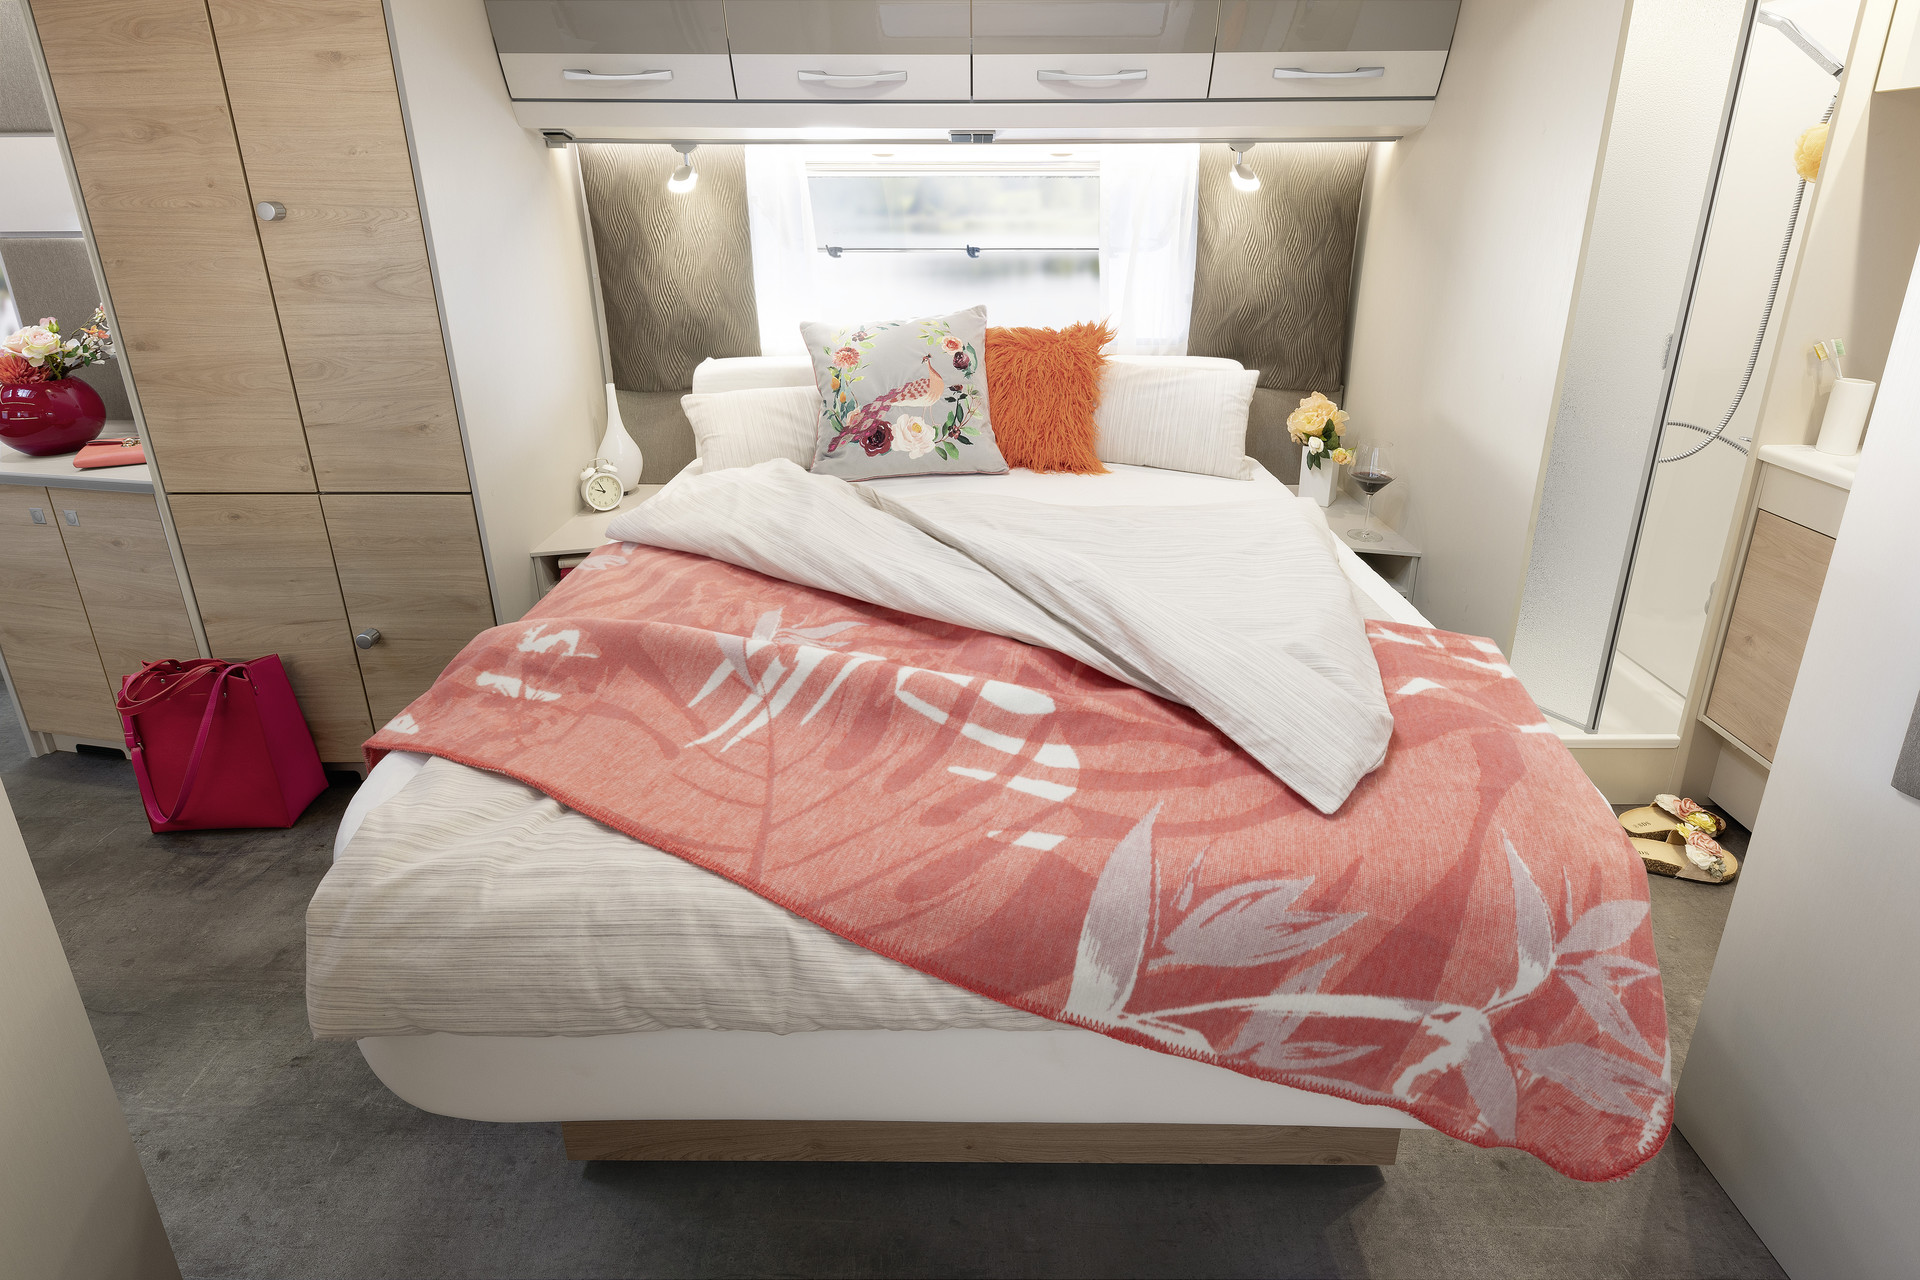 La gran cama de matrimonio es cómodamente accesible por tres lados y, durante el día, puede replegarse para obtener más espacio • 650 RQT | Chromo